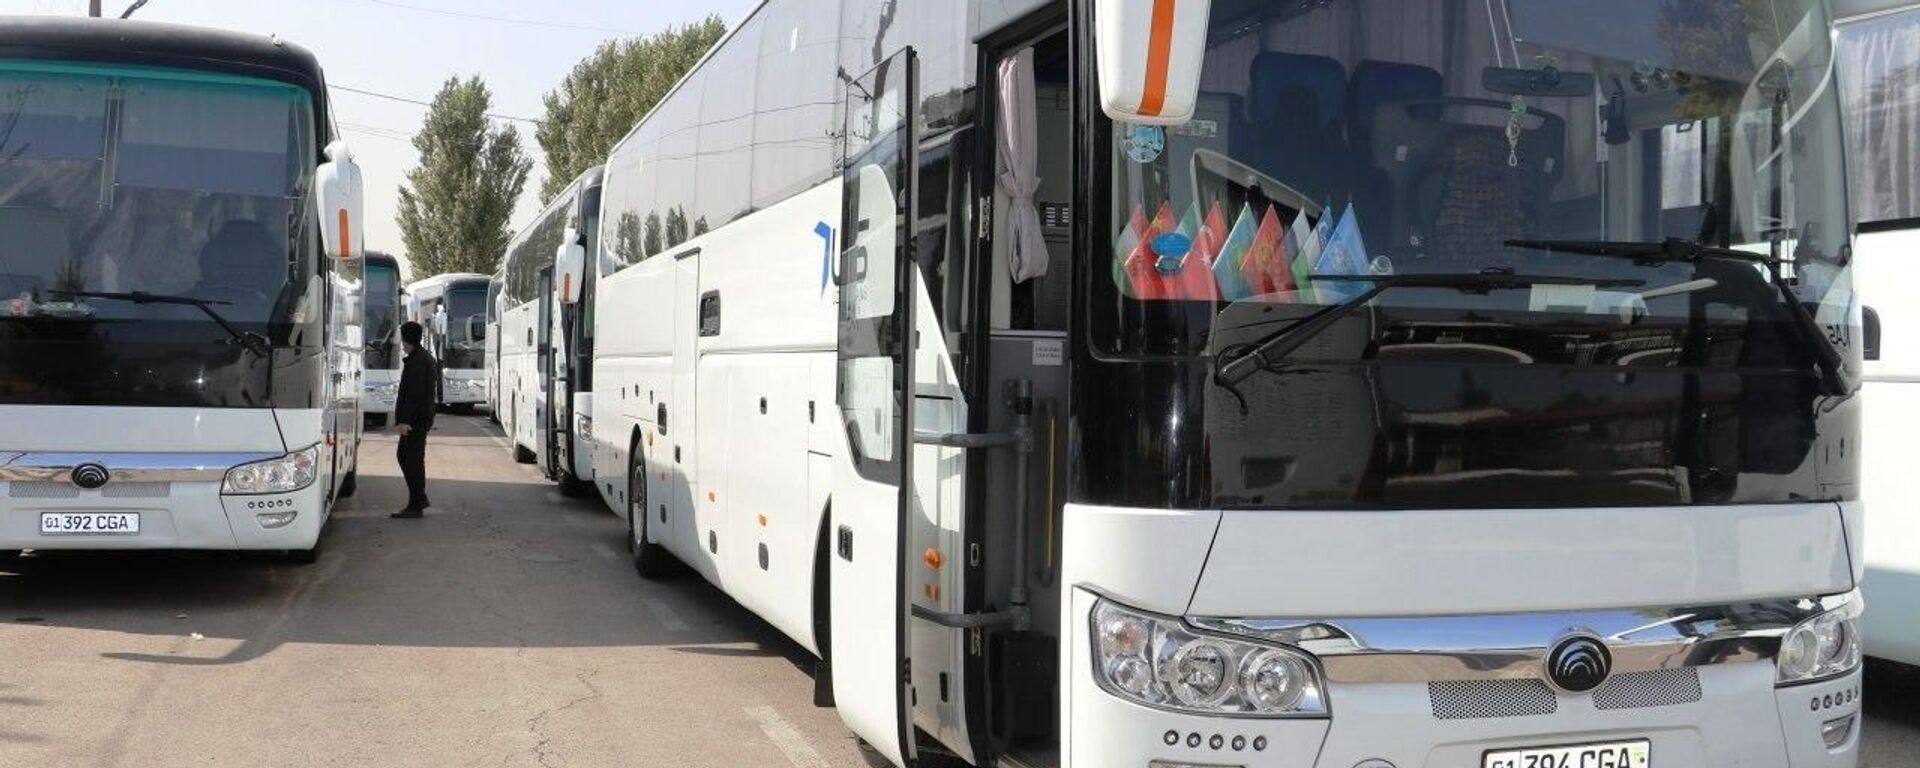 В Самару направили ещё 15 автобусов для вывоза граждан - Sputnik Ўзбекистон, 1920, 08.10.2021